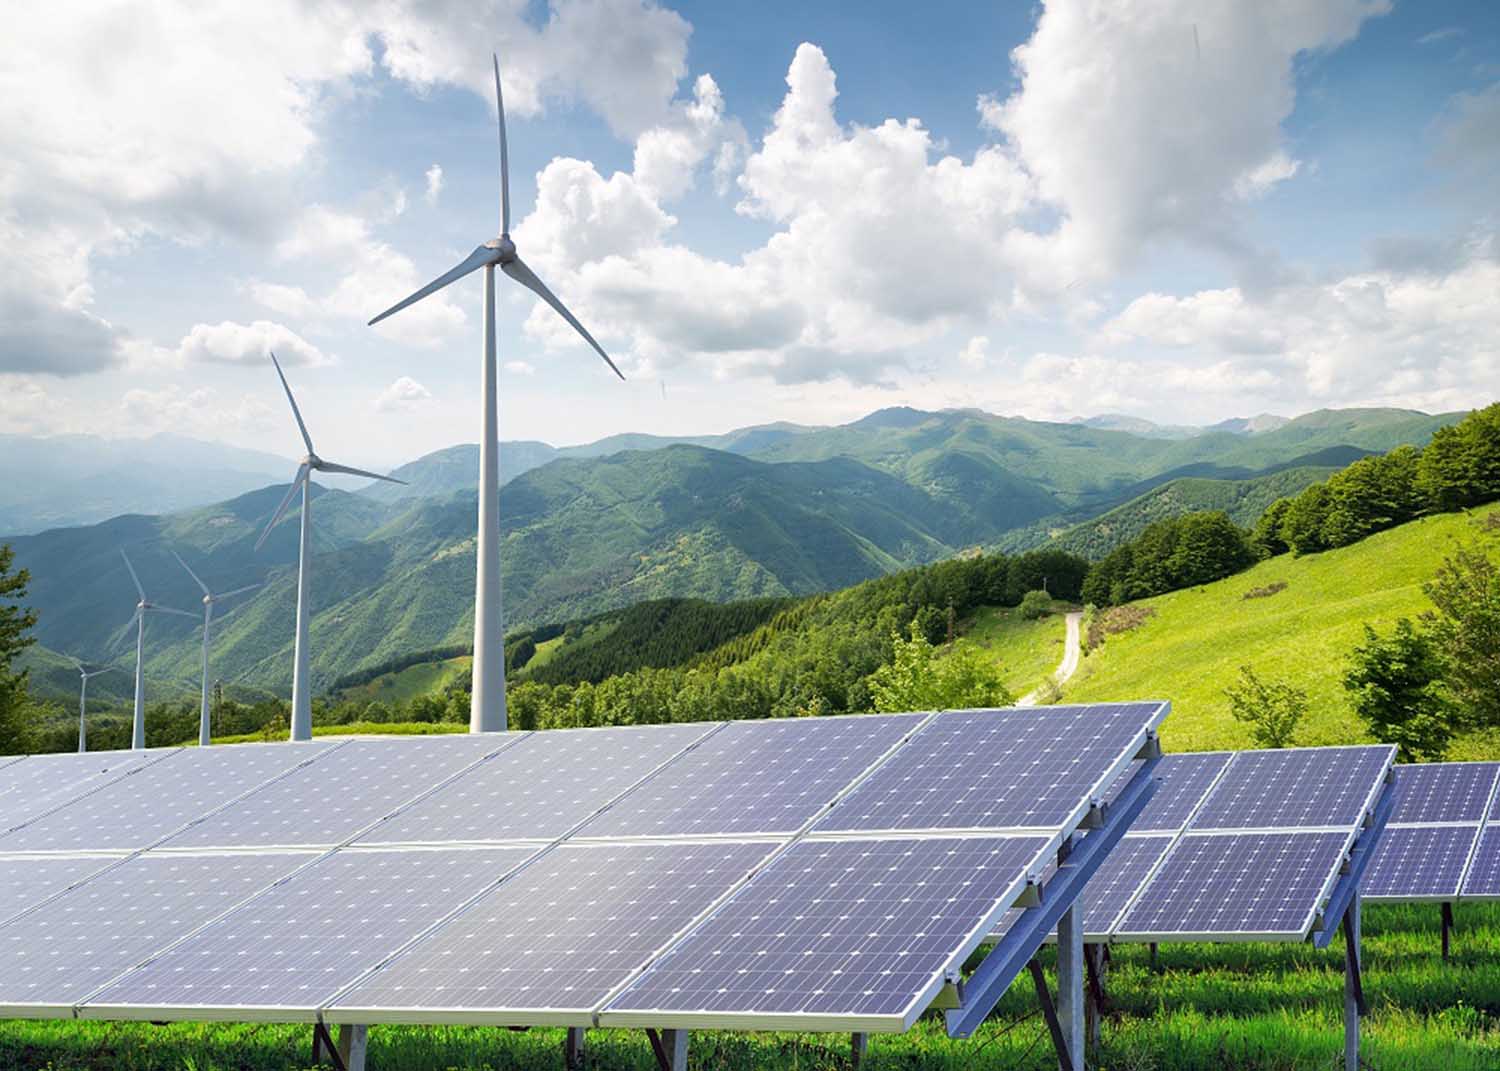 بريجستون أوروبا تعلن اعتمادها على مصادر الطاقة المتجددة بنسبة 100%